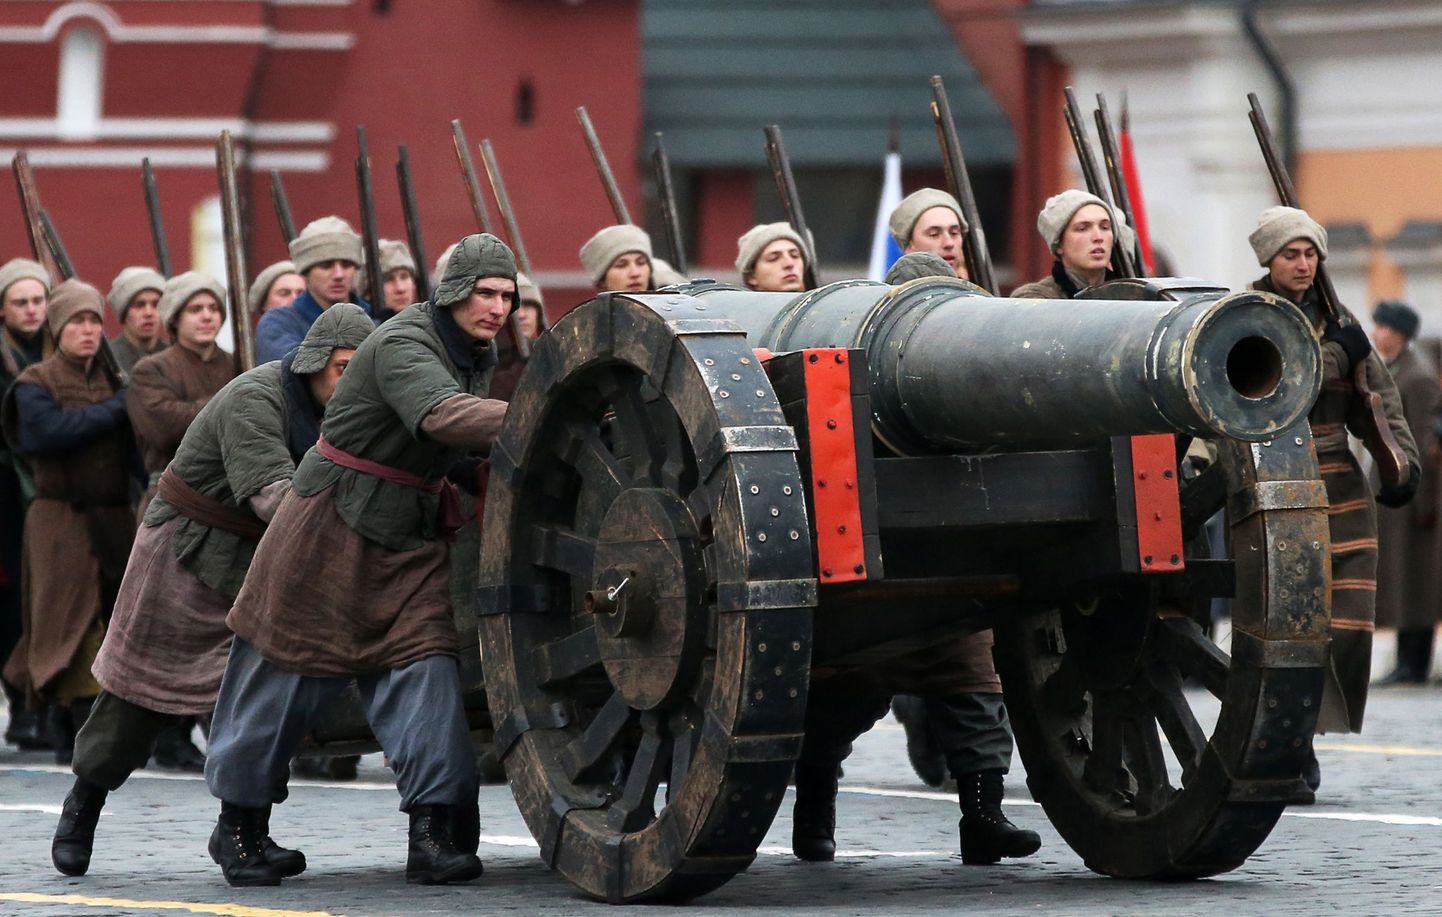 Ajaloolistes vormides Vene sõdurite paraad Punasel väljakul. Pilt on illustratiivne.